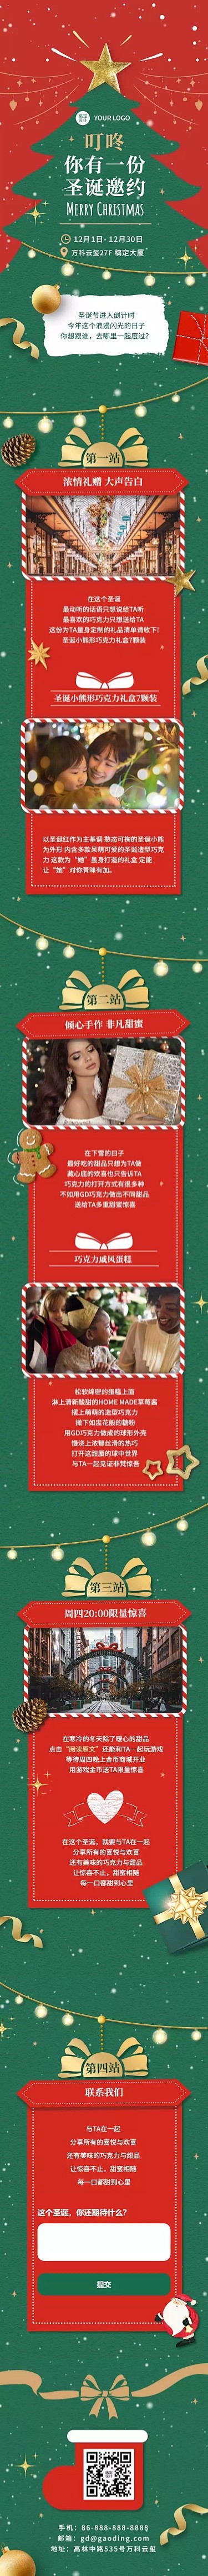 H5长页互动游戏【下雪特效】圣诞节圣诞树...